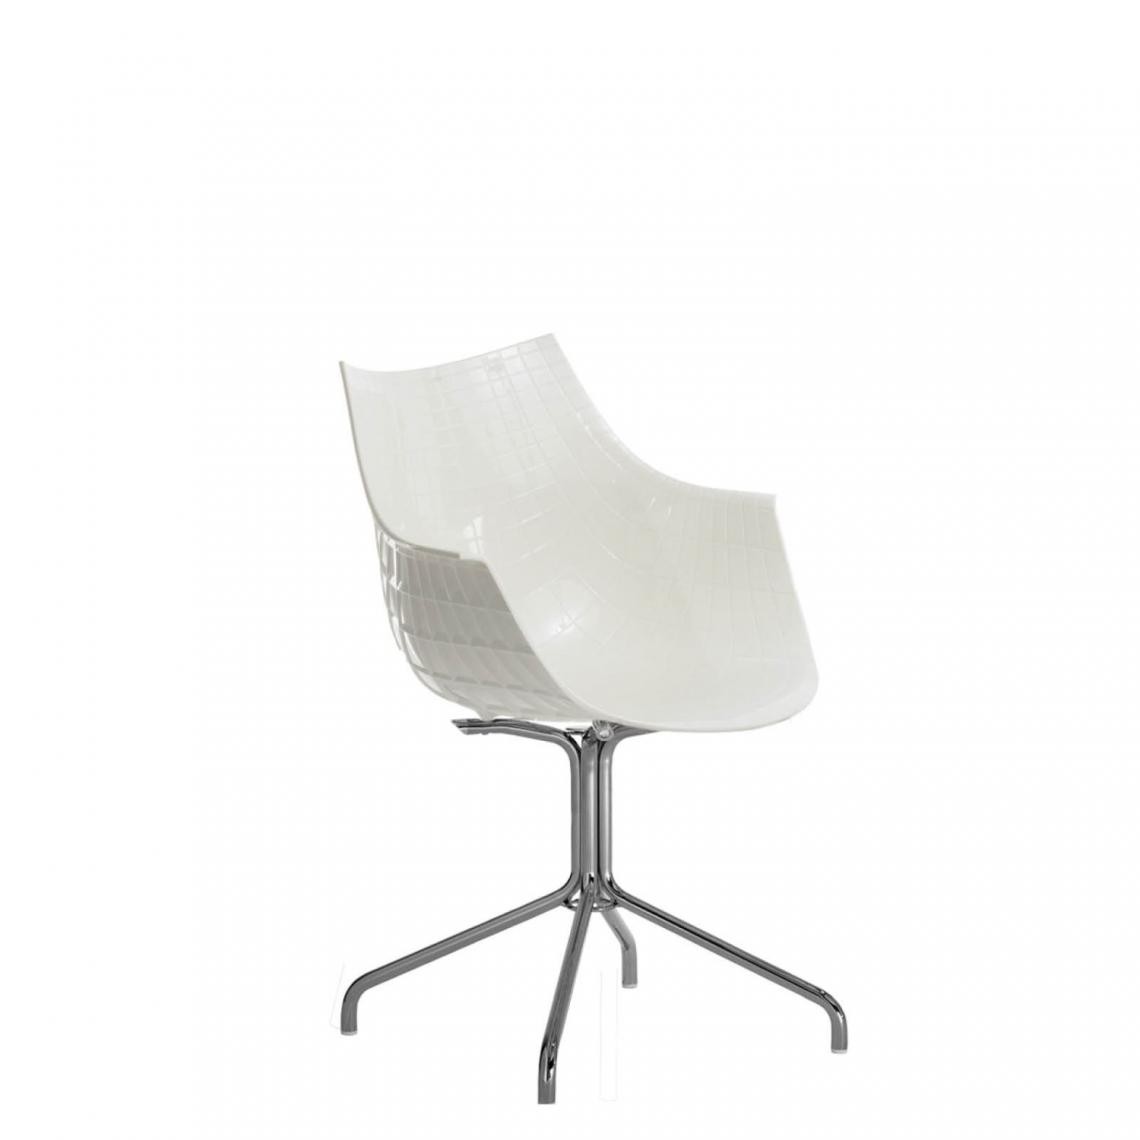 Driade - Chaise avec accoudoirs Meridiana - chrome - blanc - Chaises